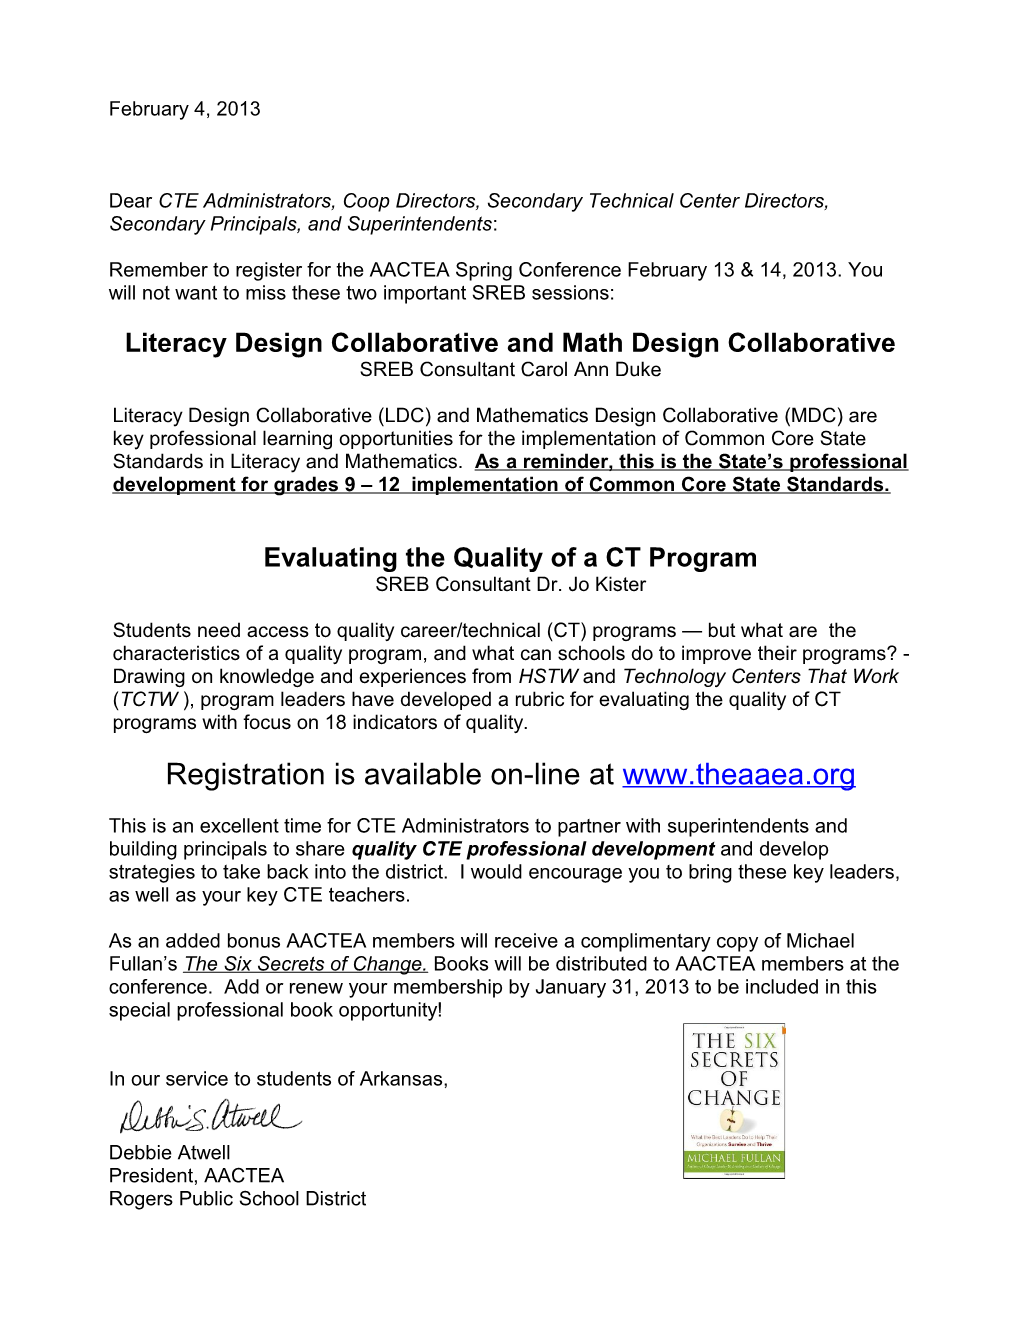 Literacy Design Collaborative and Math Design Collaborative